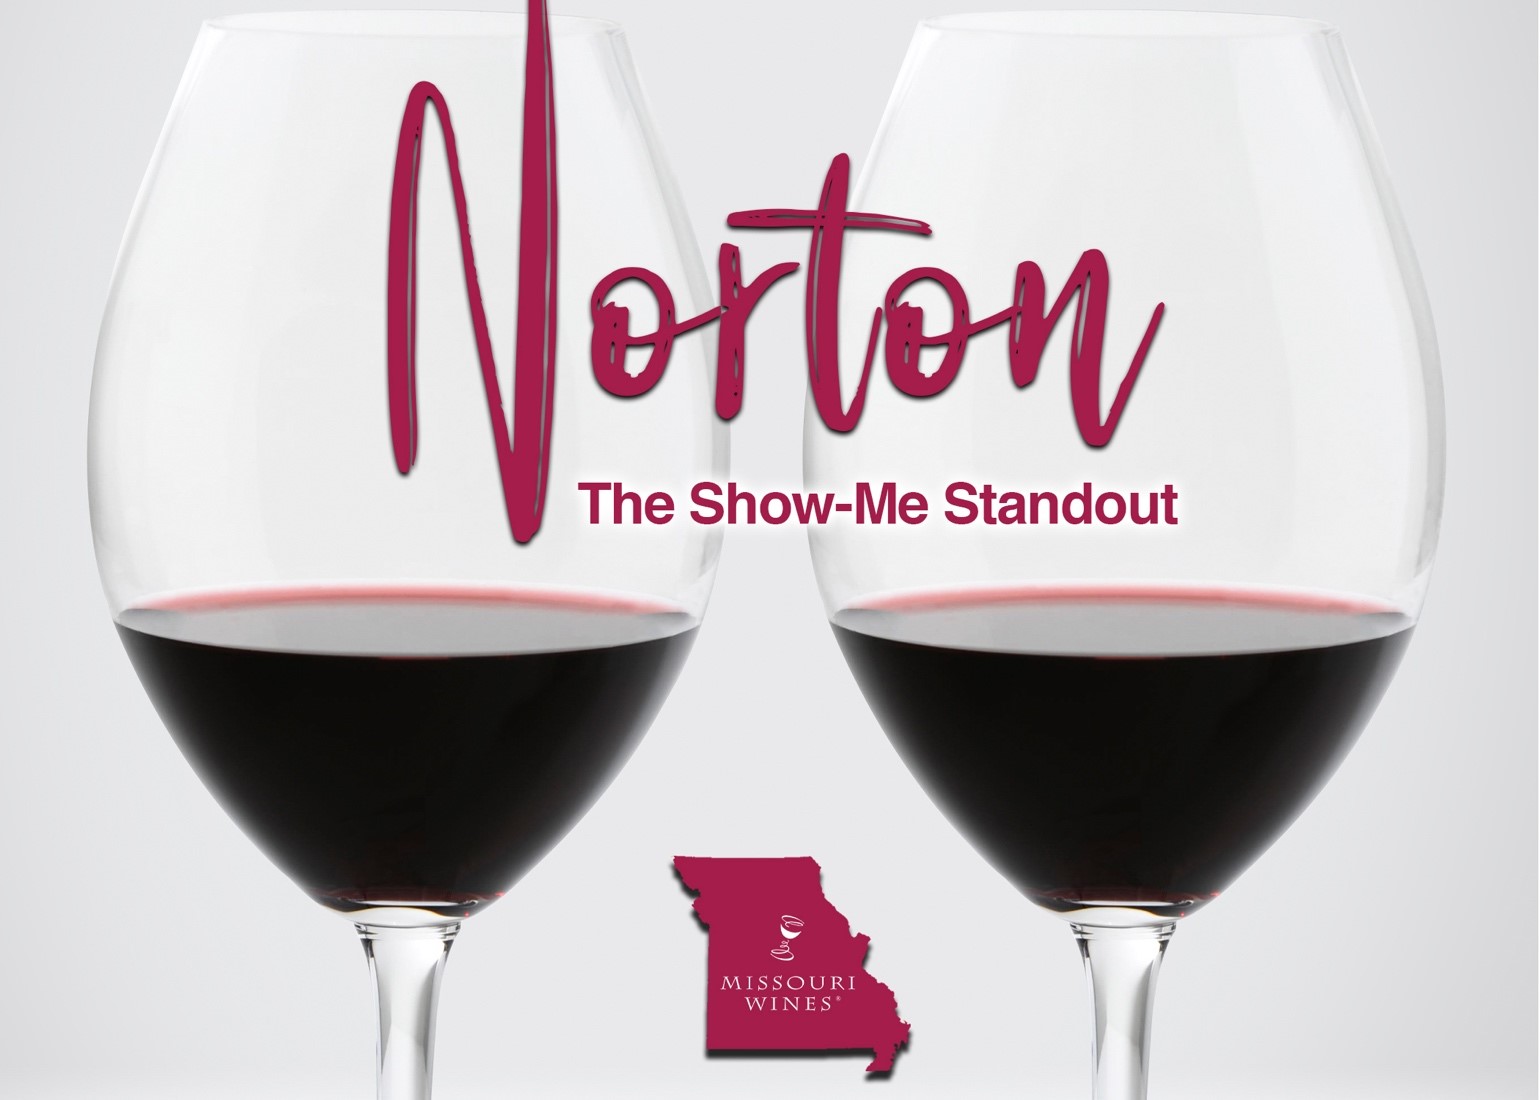 Norton: The Show-Me Standout